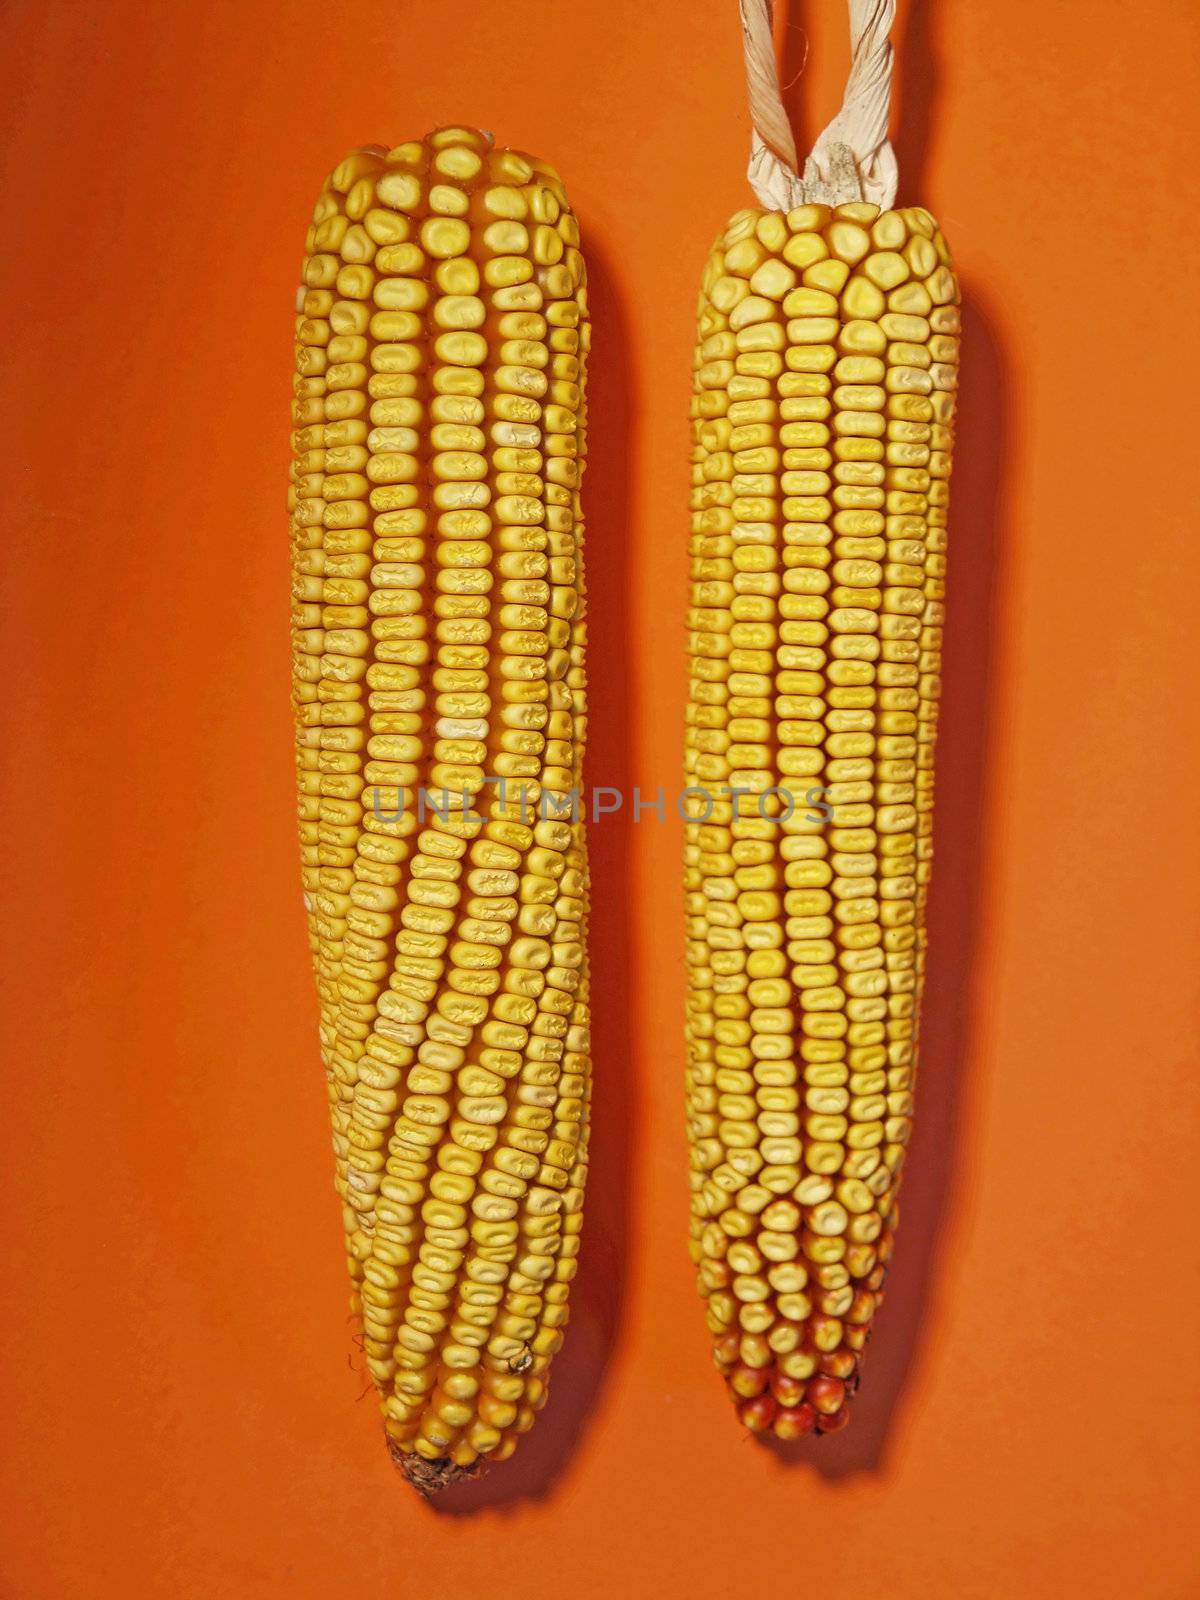 Maize by adamr